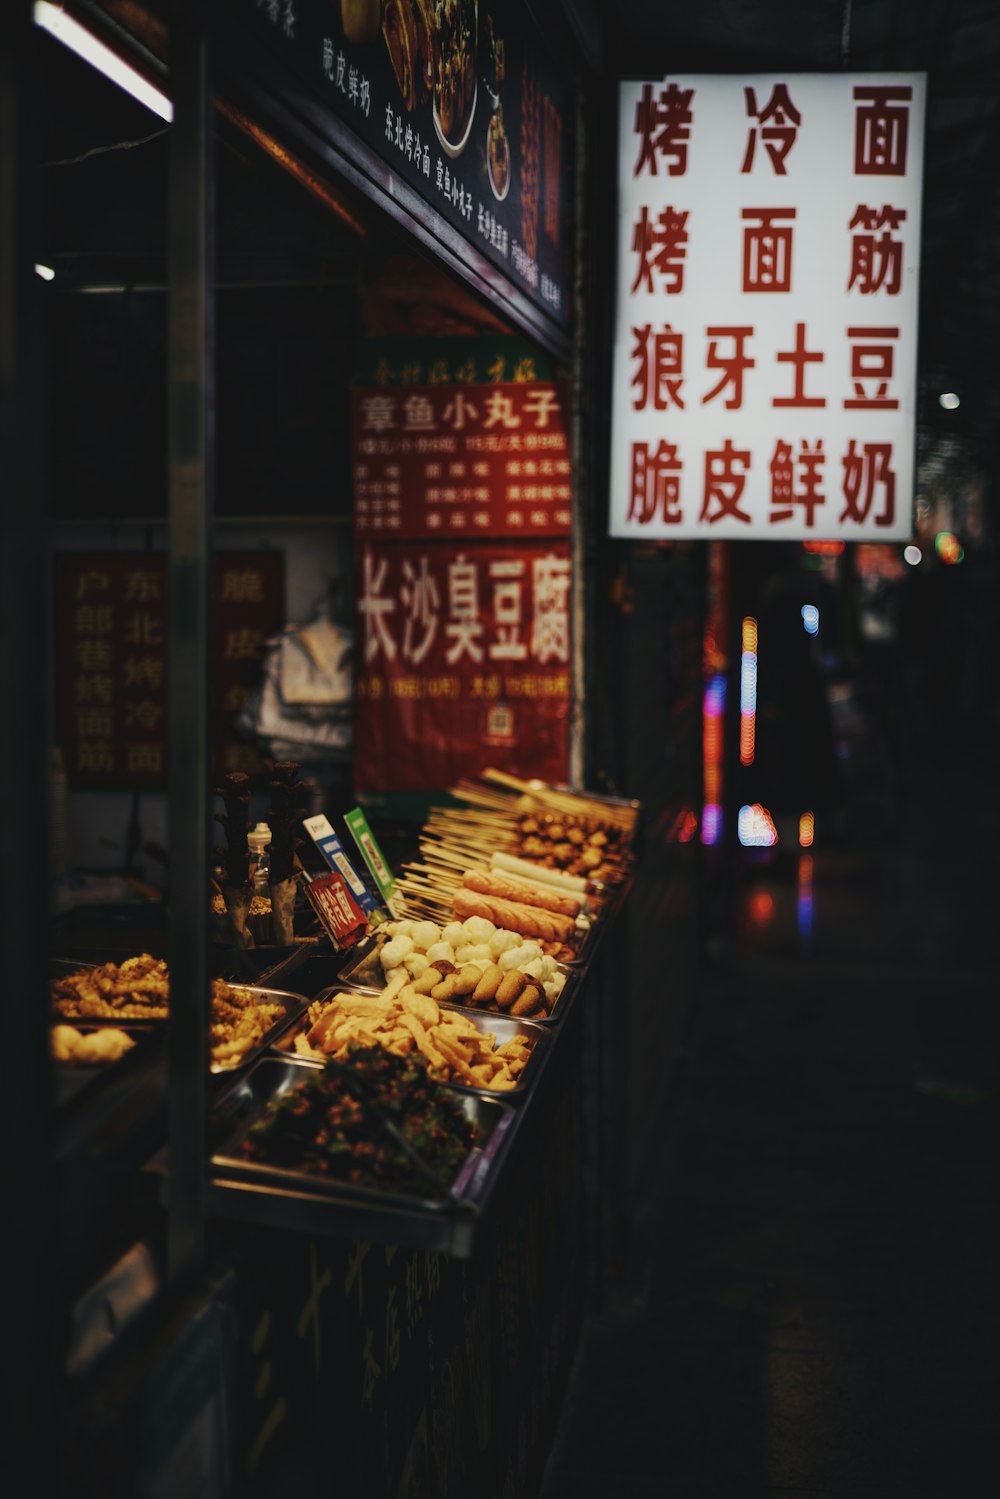 uma barraca de comida com escrita chinesa sobre ele